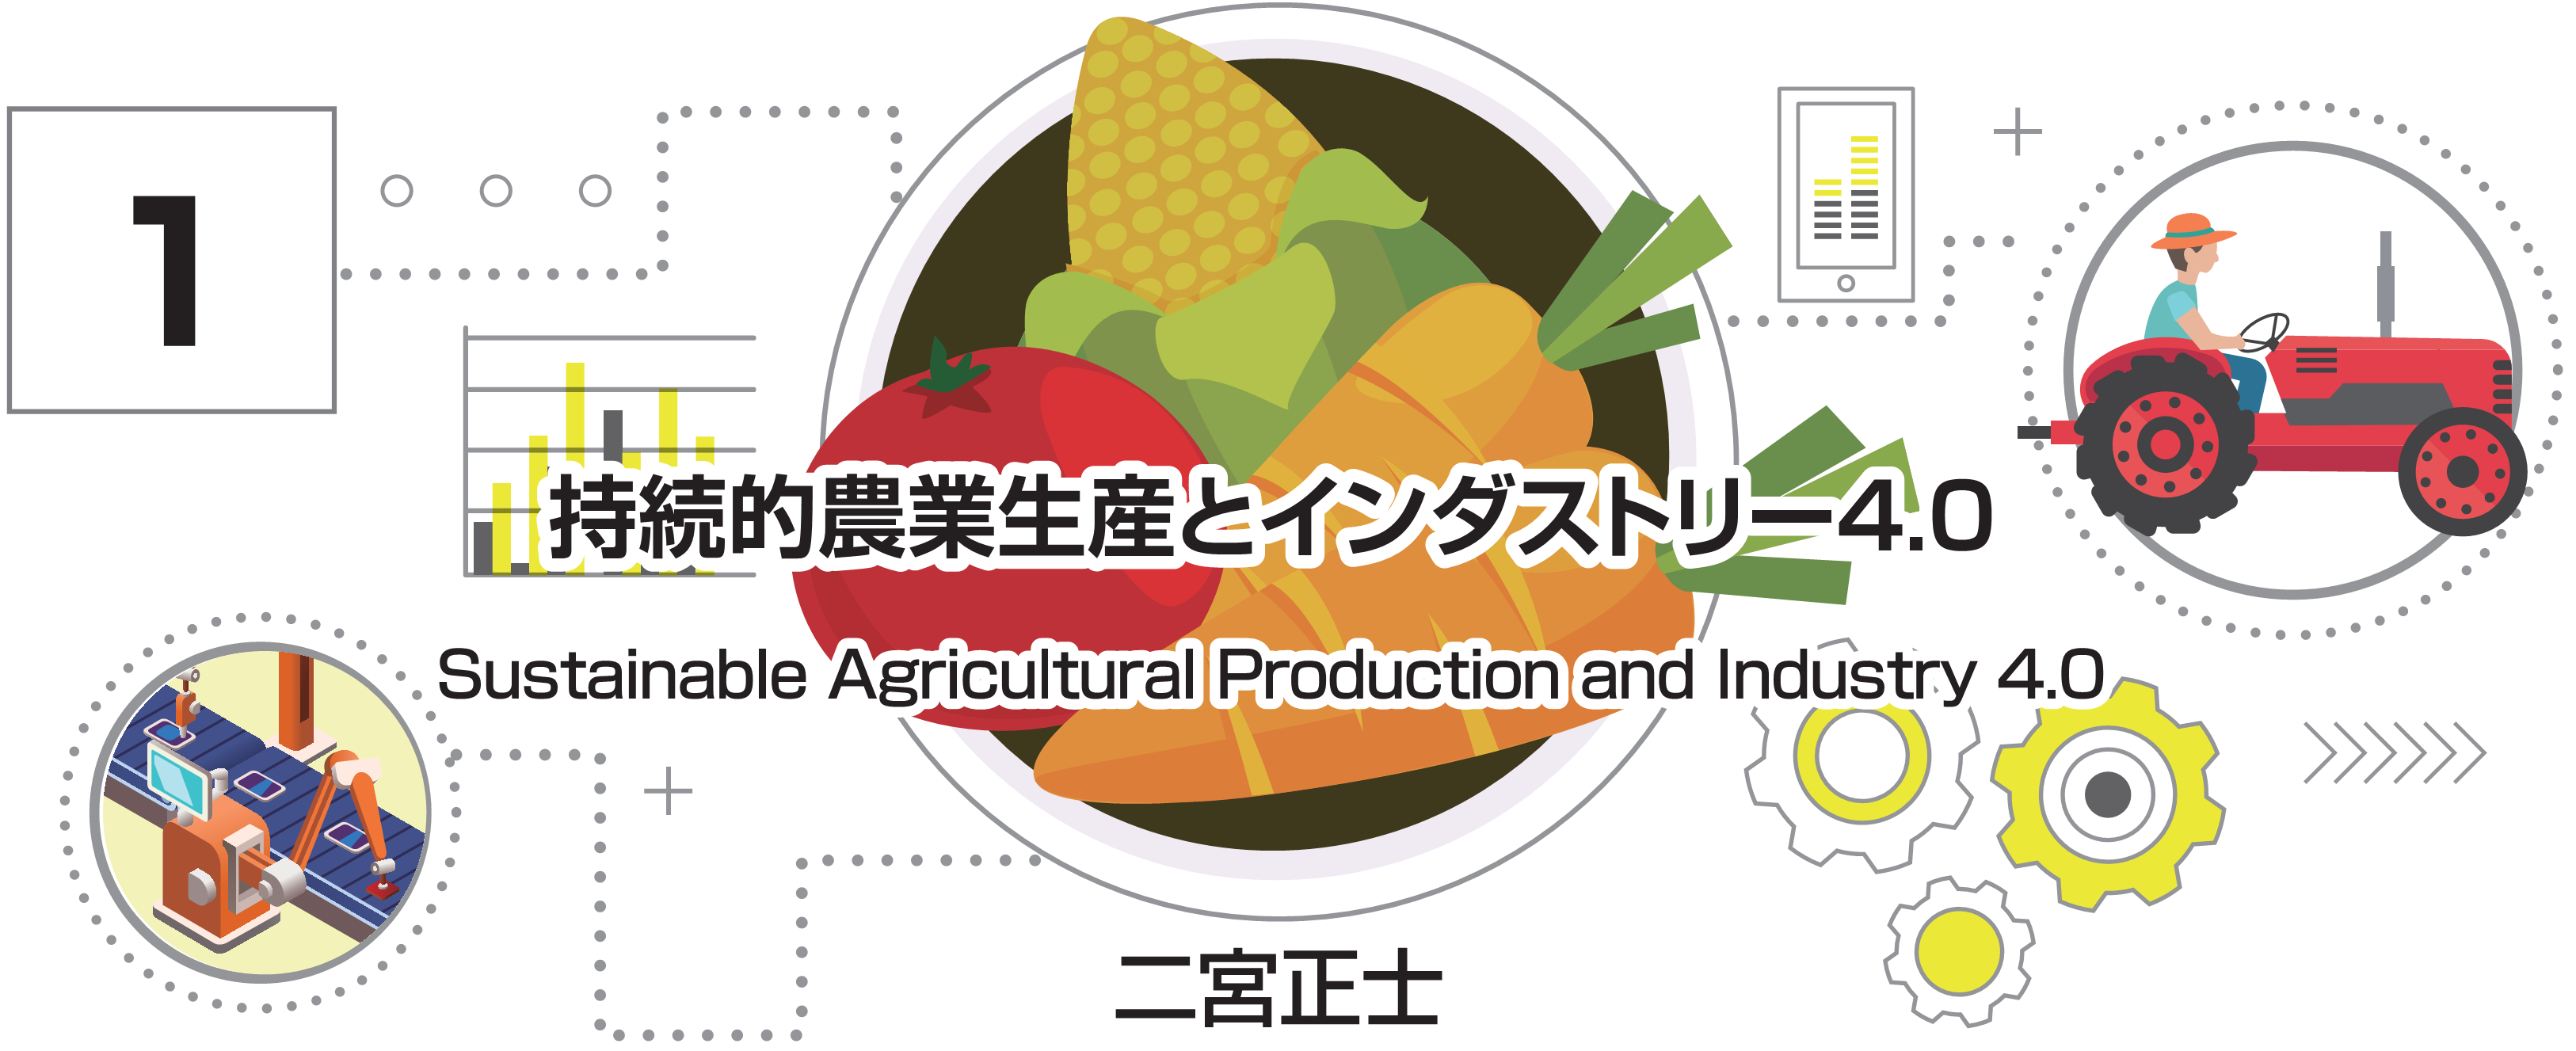 特別小特集 1. 持続的農業生産とインダストリー4.0